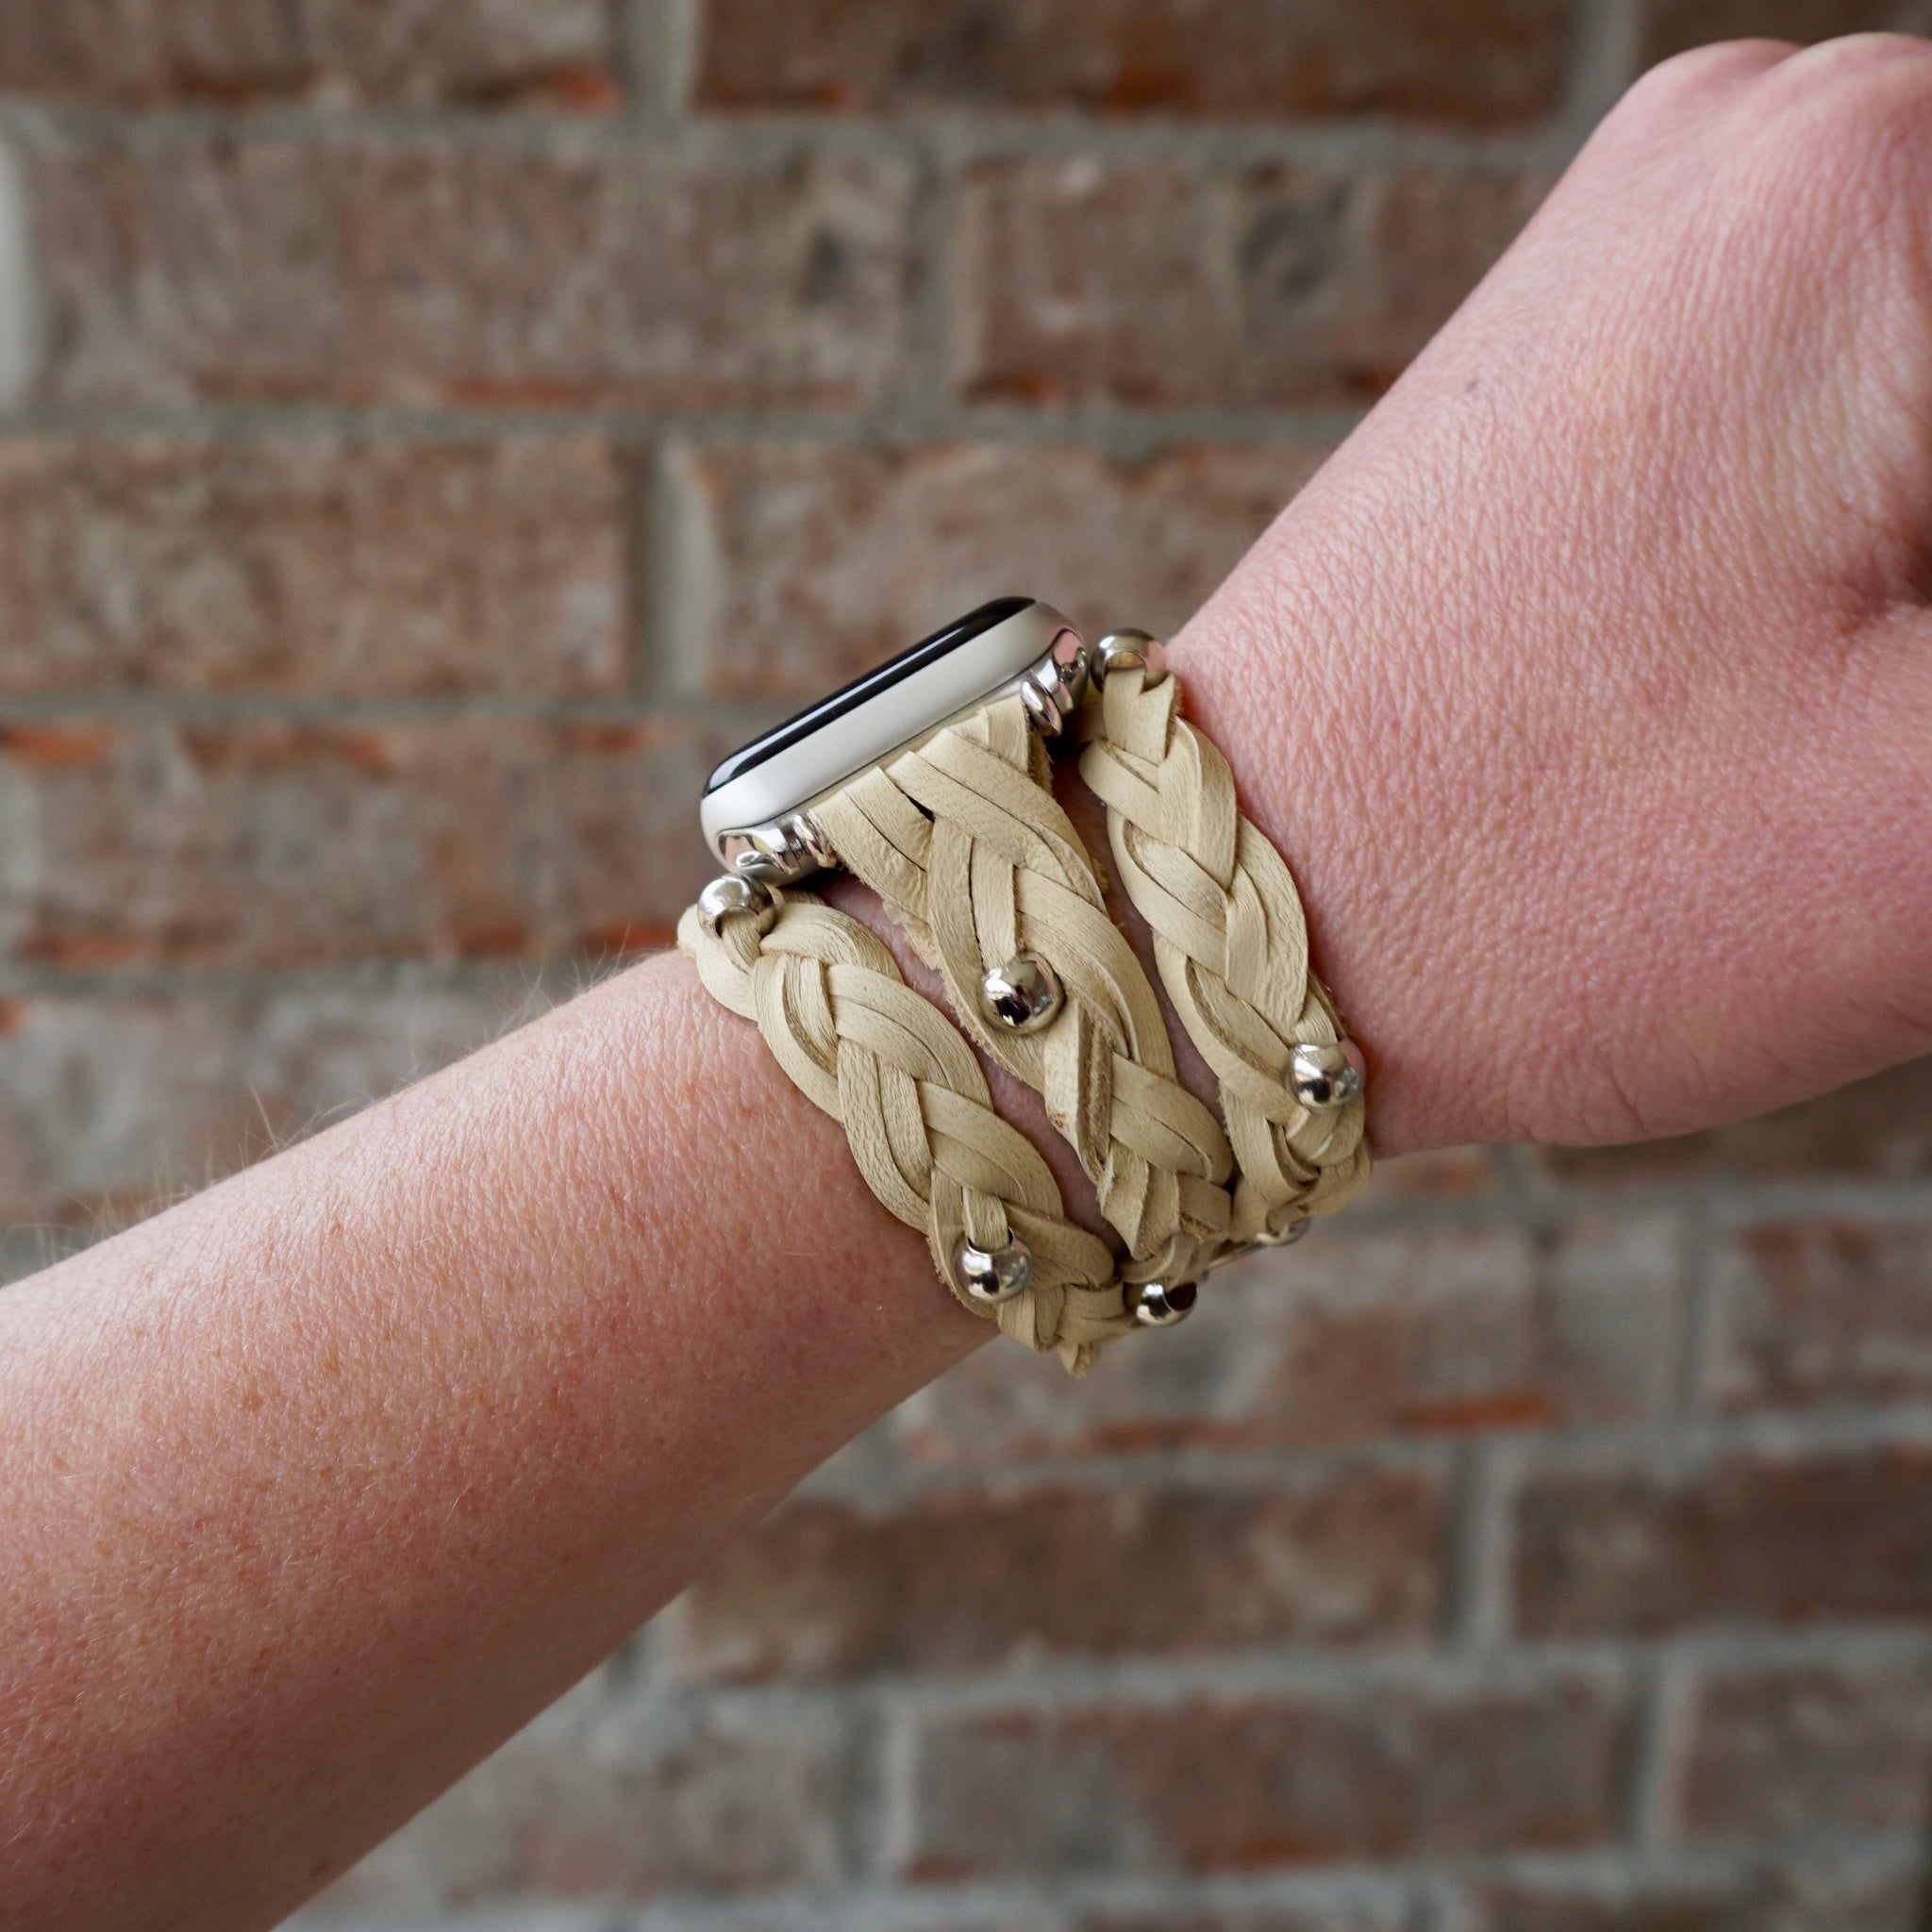 Beige Calfskin Apple Watch Band – Waves Texture